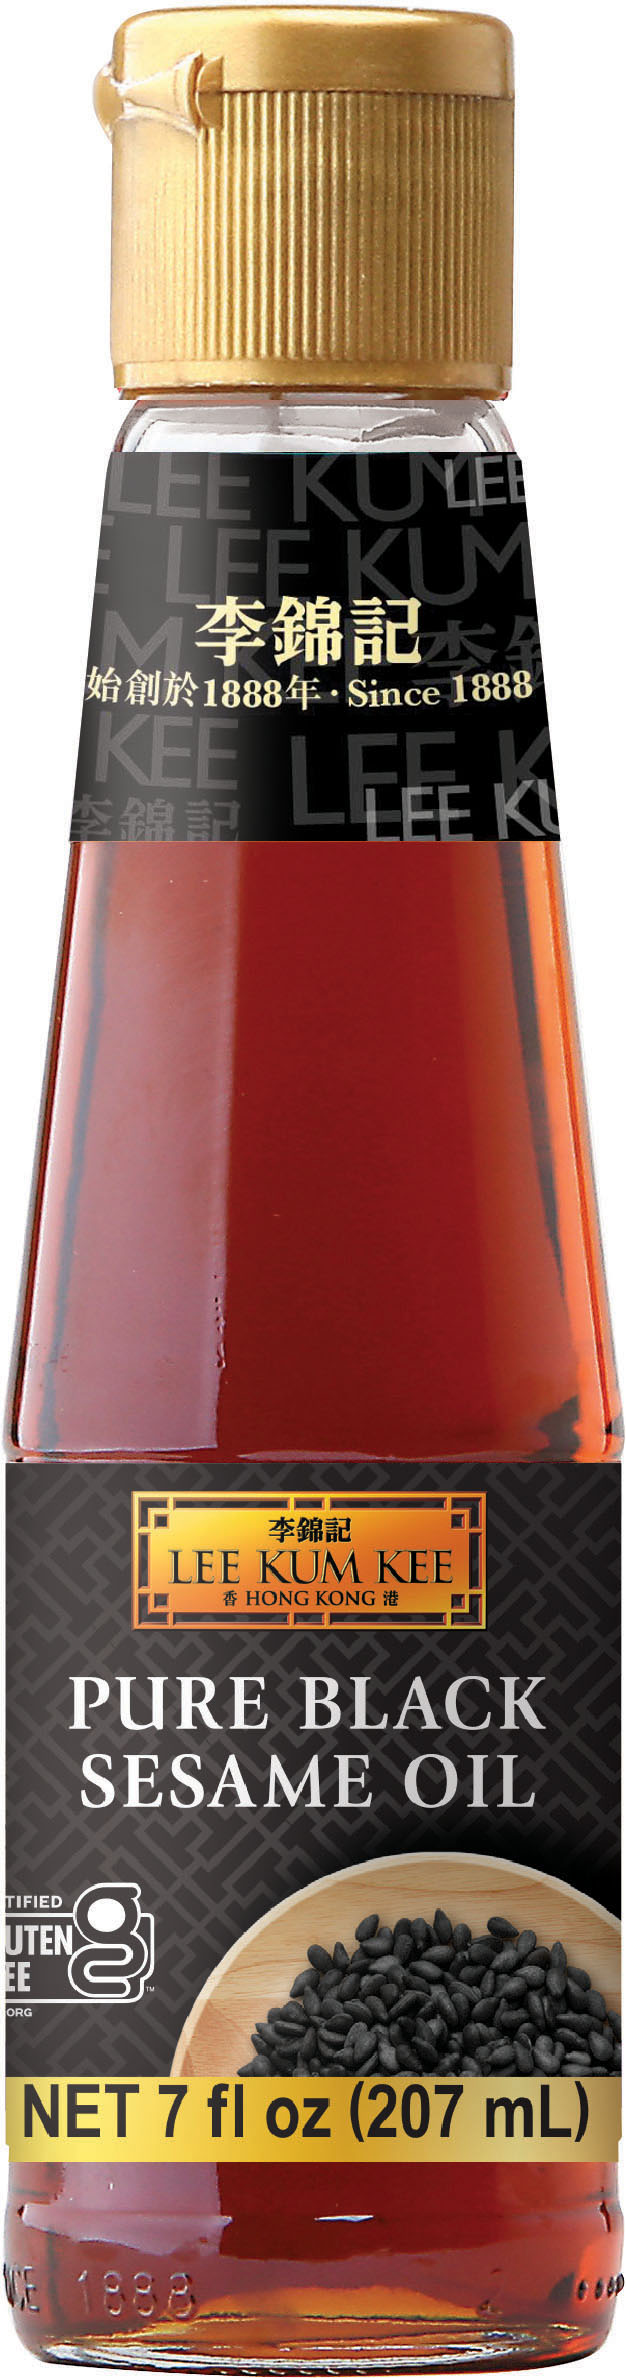 黑芝麻油 7 fl oz (207 ml), 瓶裝